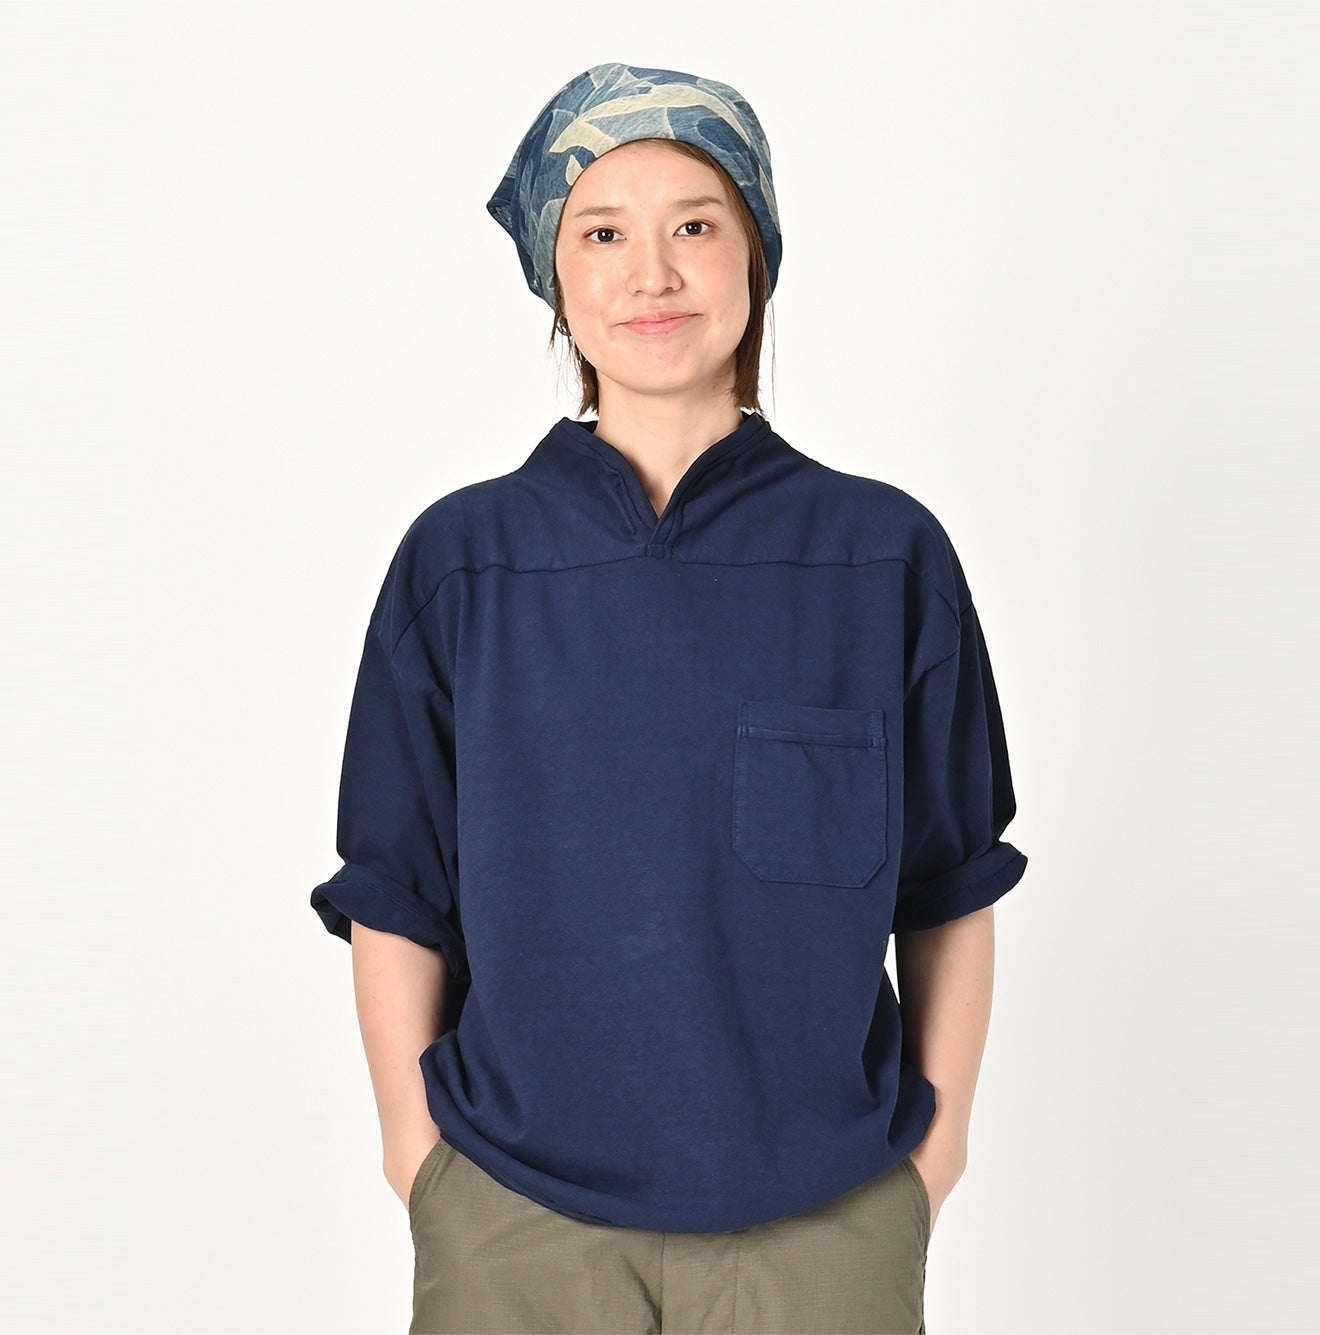 Dekoboko Tenjiku 外衣 T 恤